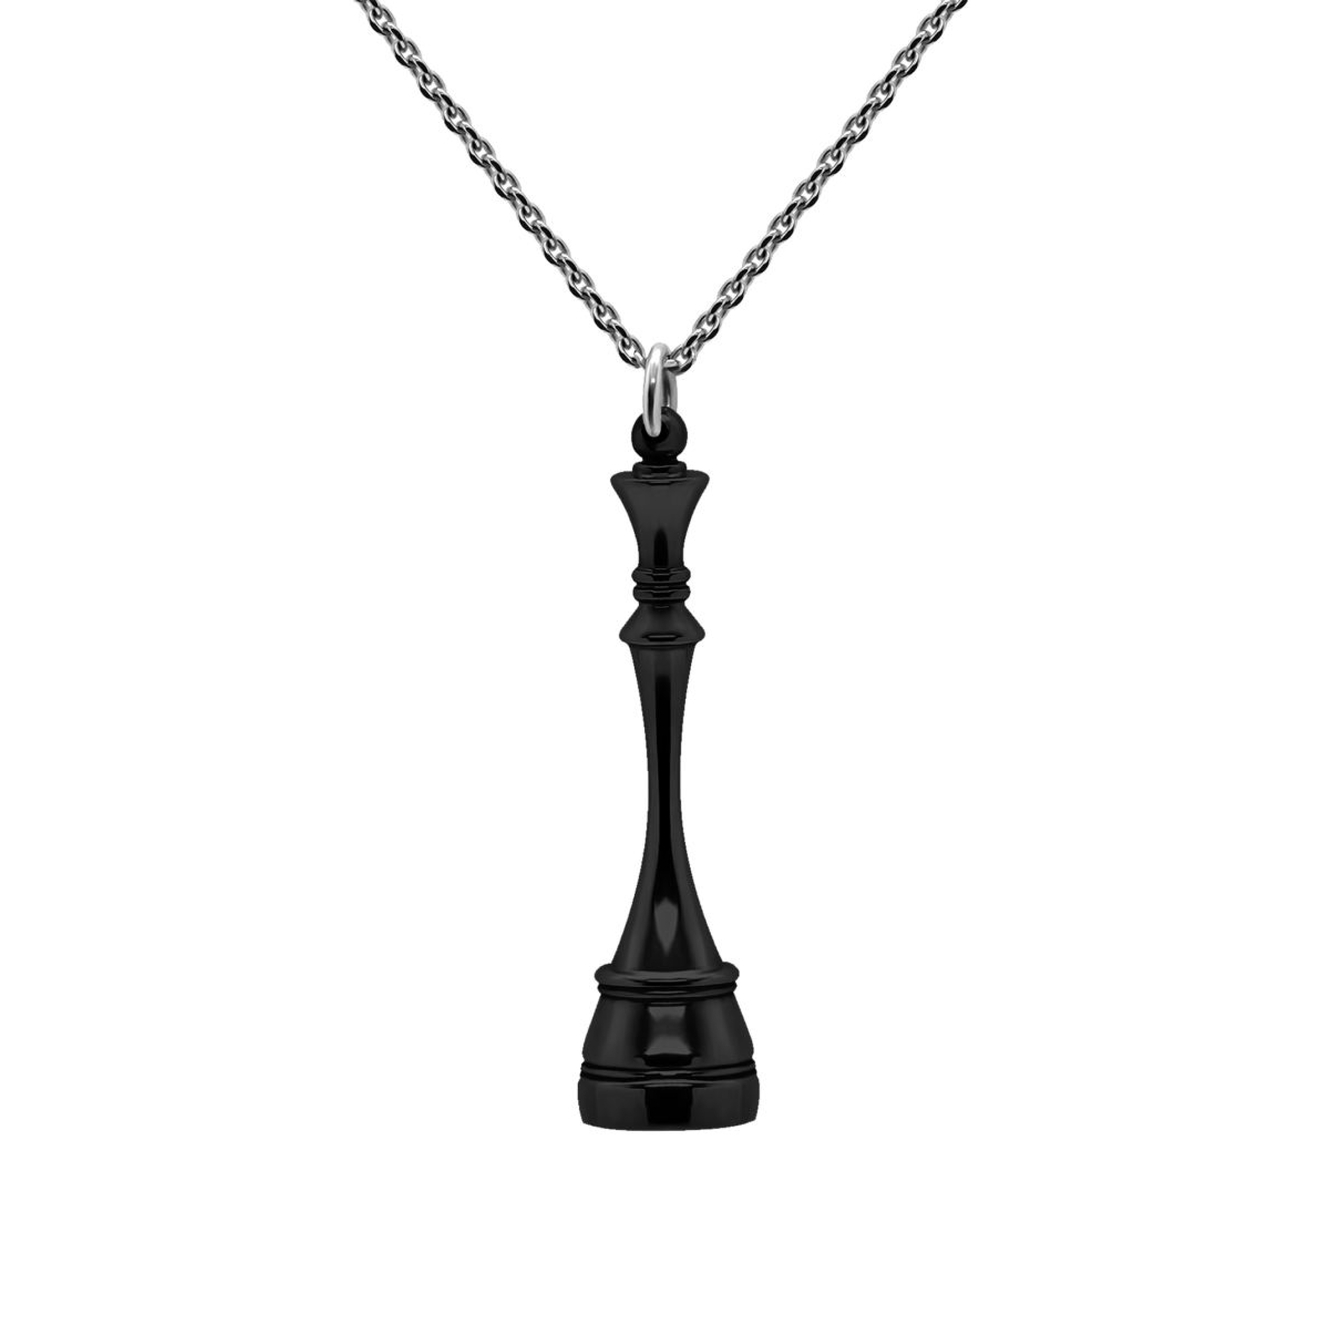 Prosto Jewelry Подвеска Королева Black из серебра prosto jewelry медальон да нет из серебра